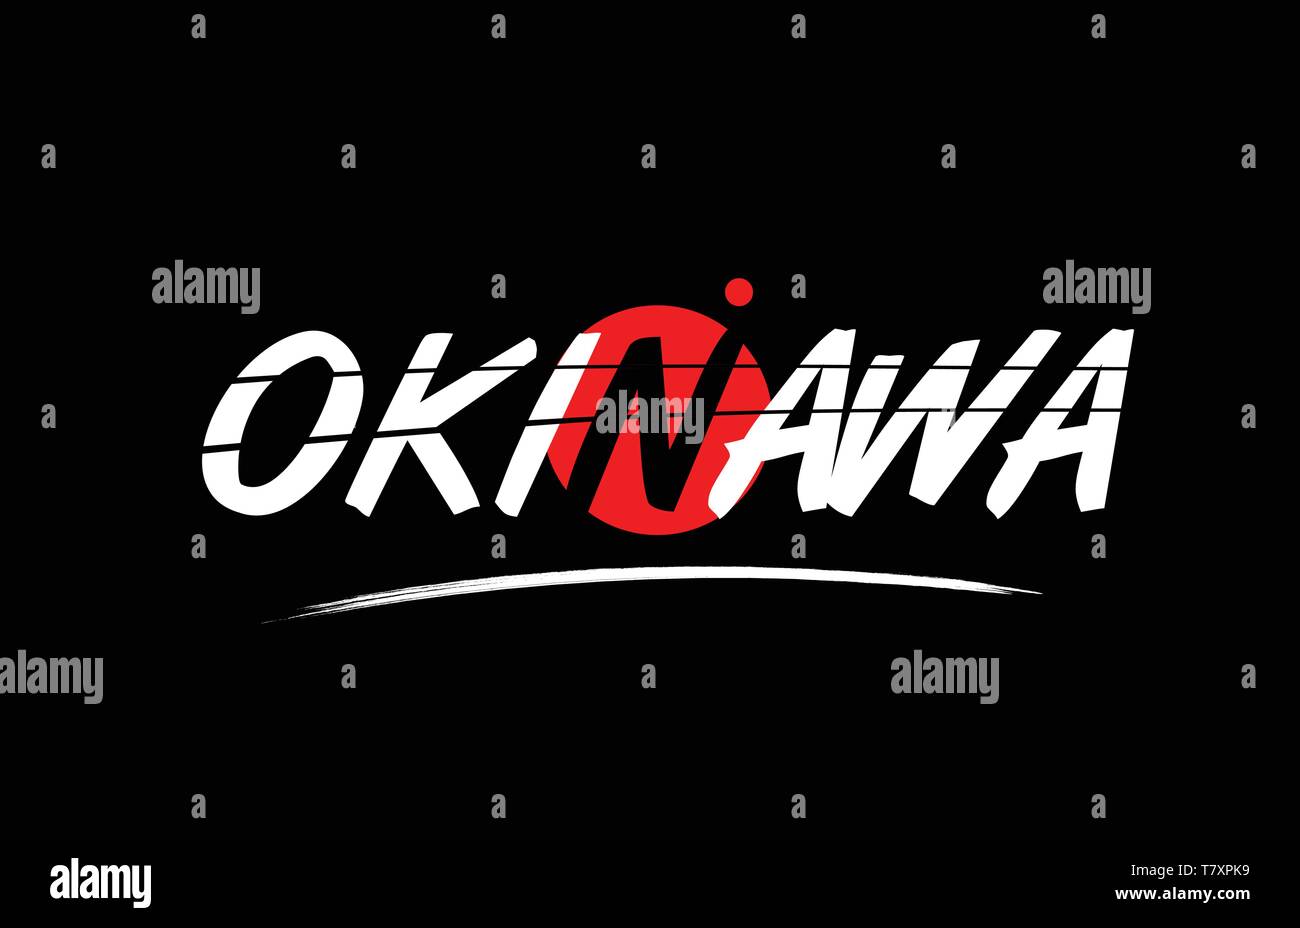 L'okinawa mot du texte sur fond noir avec le cercle rouge convient pour l'icône de carte ou typographie logo design Illustration de Vecteur